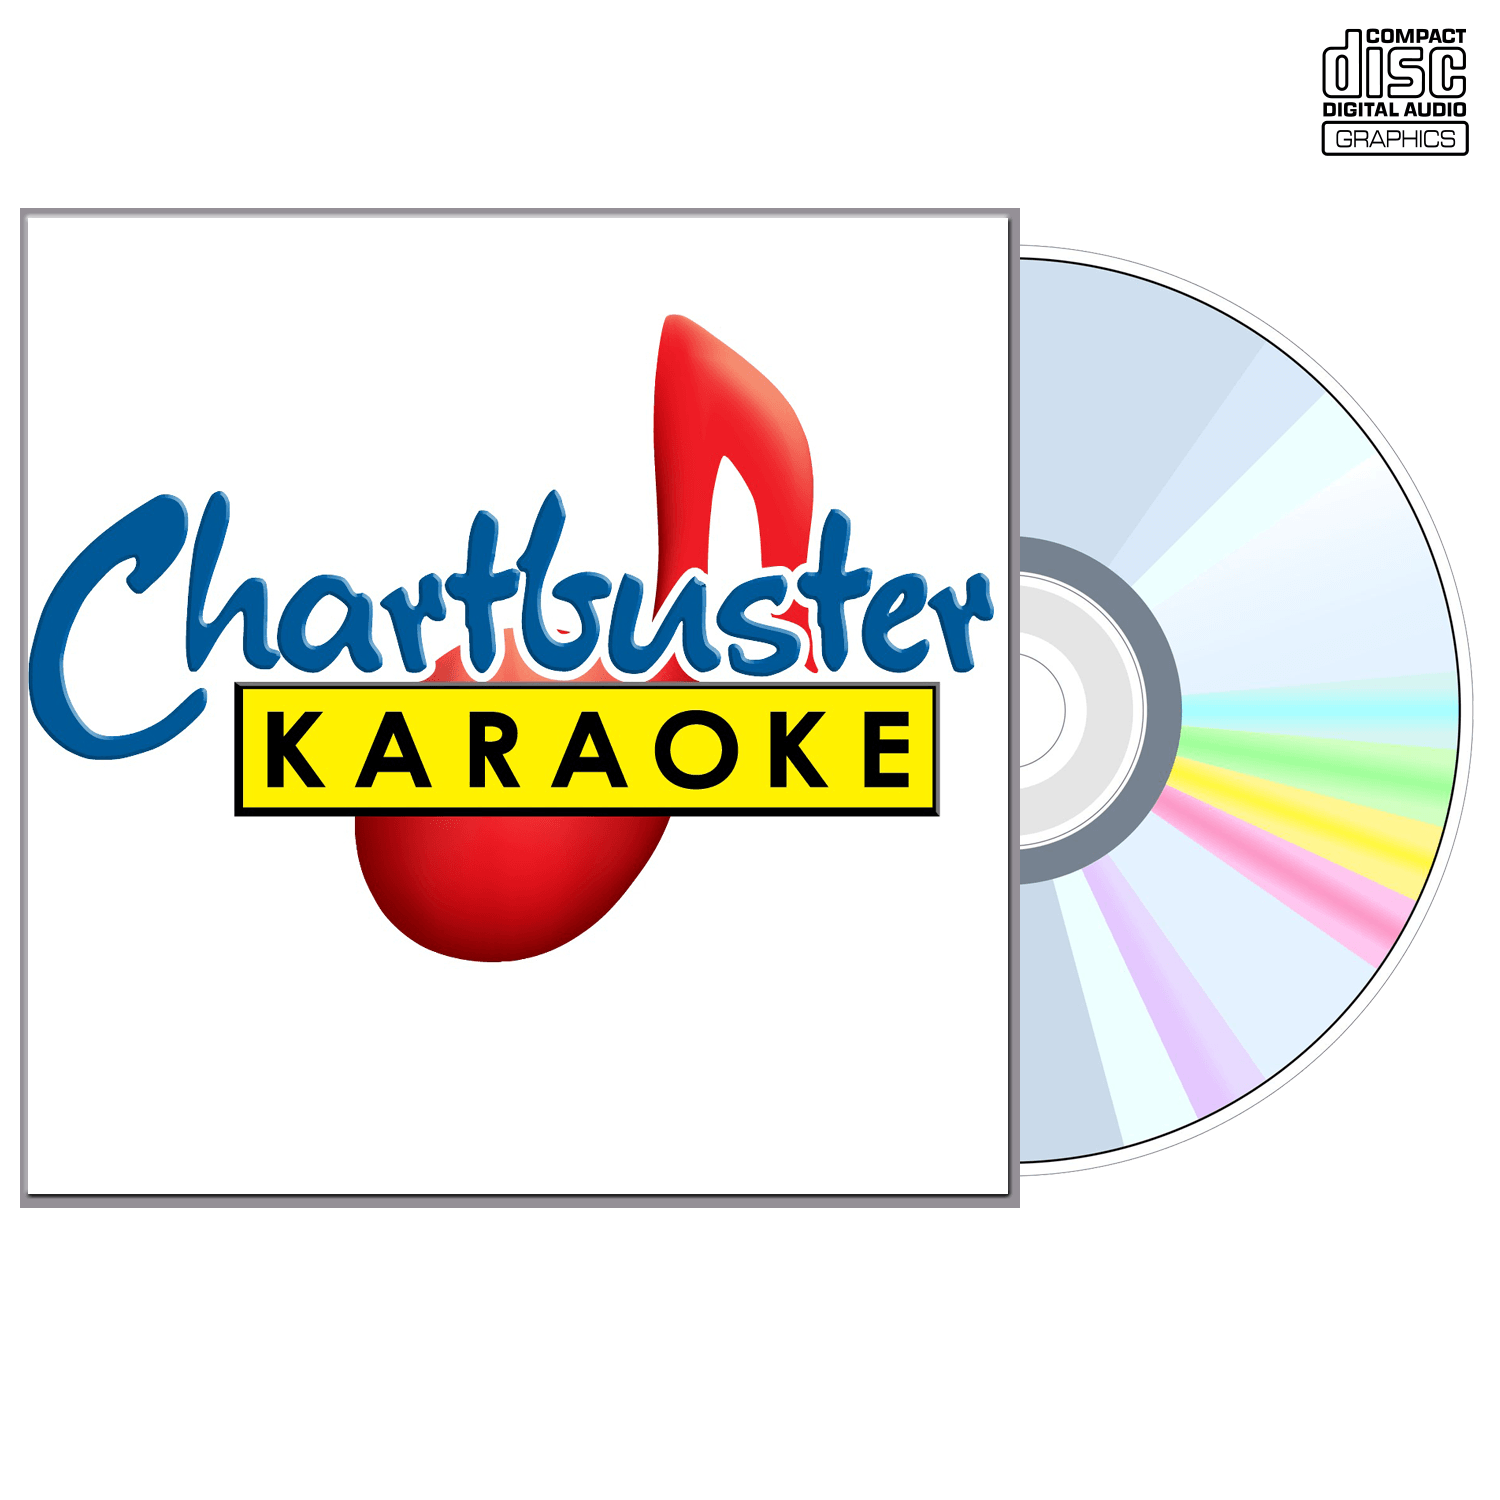 America - CD+G - Chartbuster Karaoke - Karaoke Home Entertainment